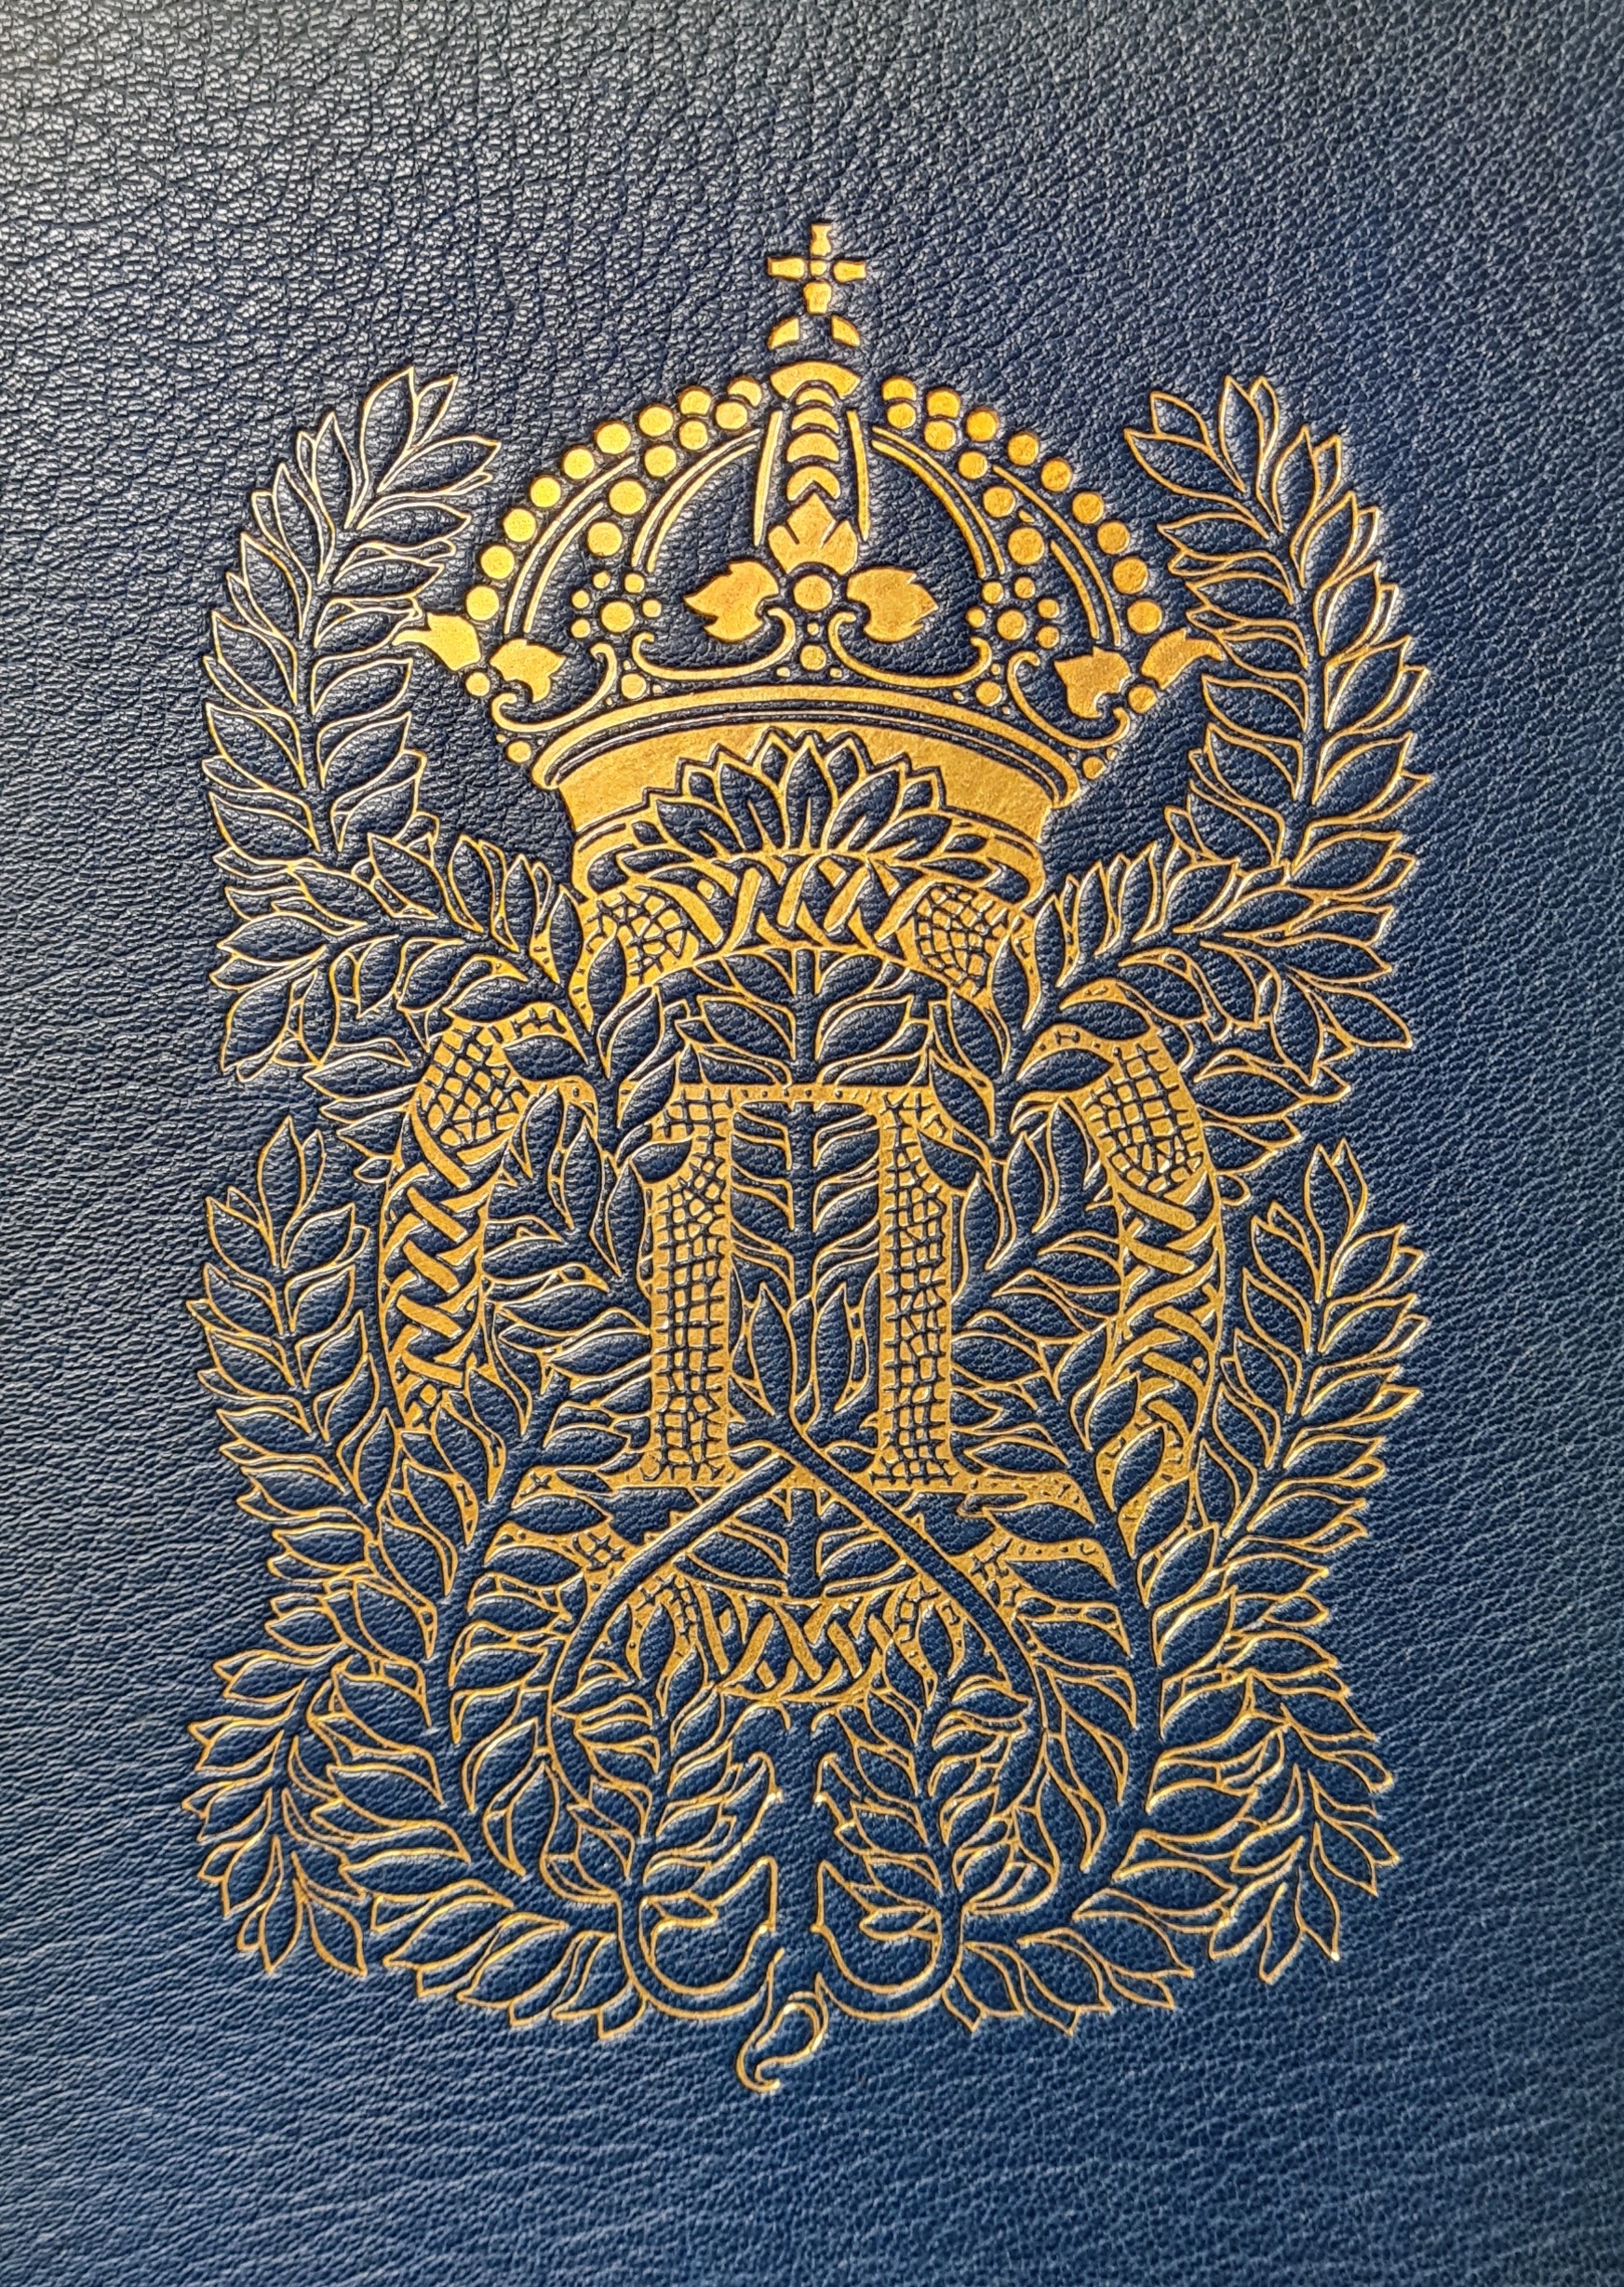 Färgfotografi av ett förgyllt monogram med kungakrona och lagerblad på en blå bokpärm